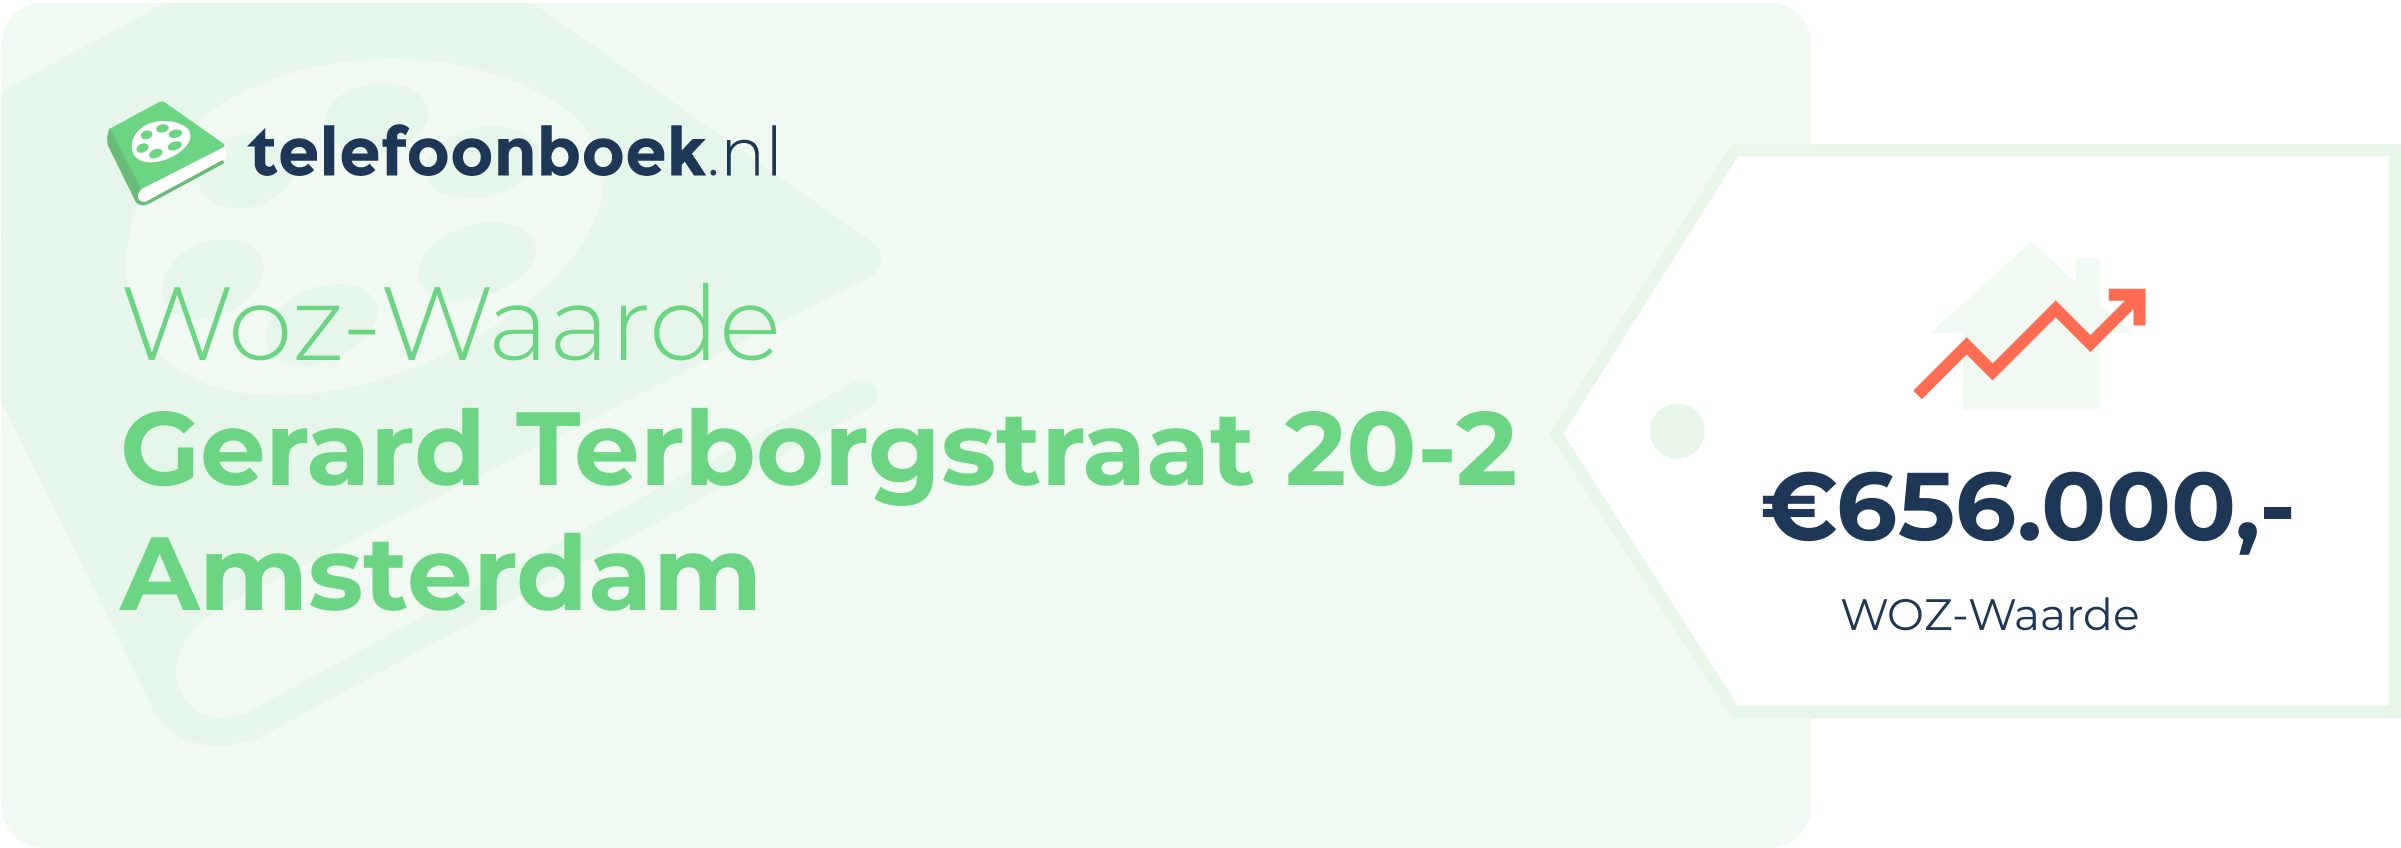 WOZ-waarde Gerard Terborgstraat 20-2 Amsterdam